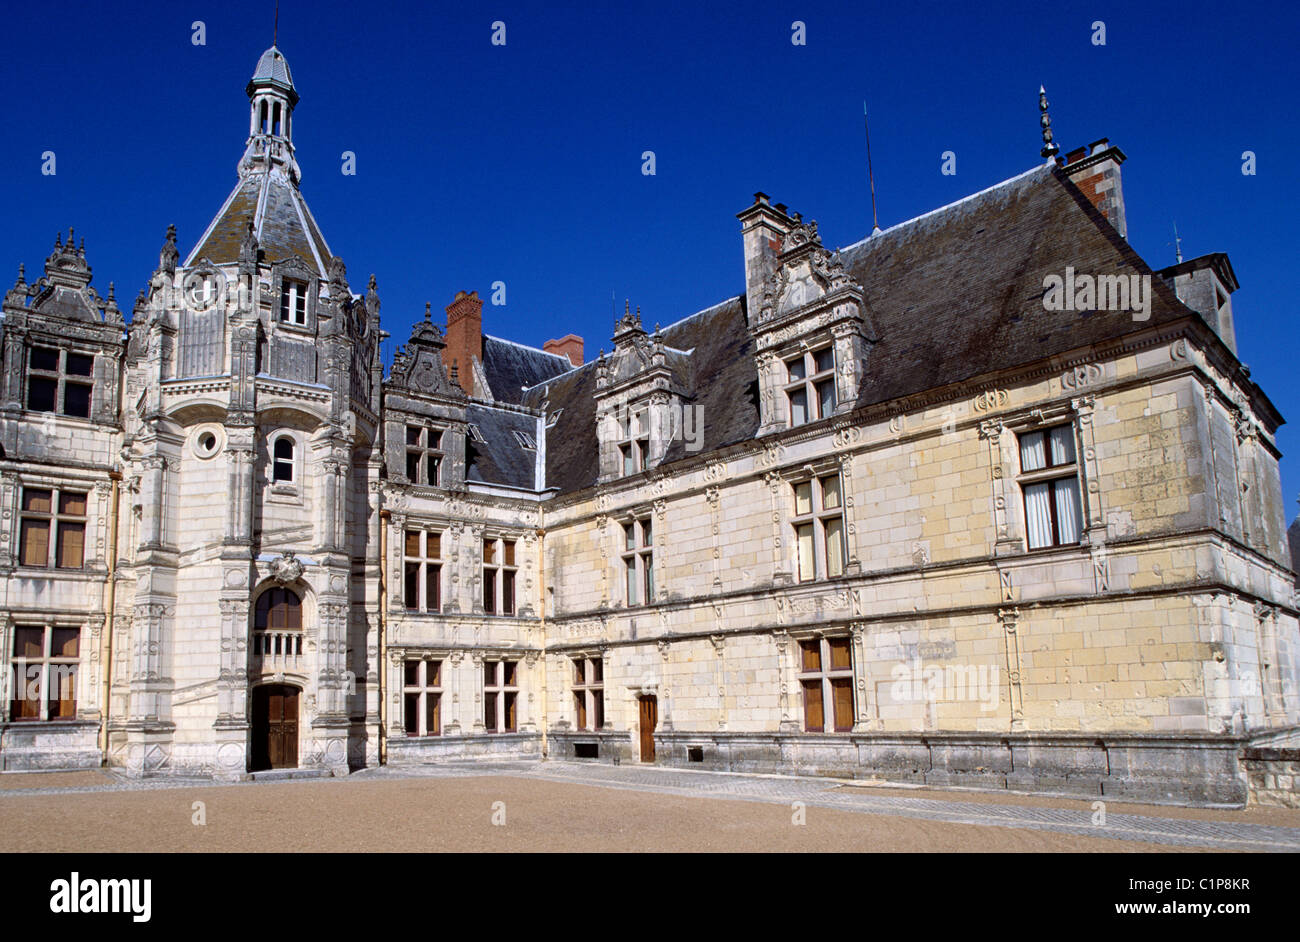 France, Loir et Cher, Cher Valley, Chateau de Saint Aignan Stock Photo